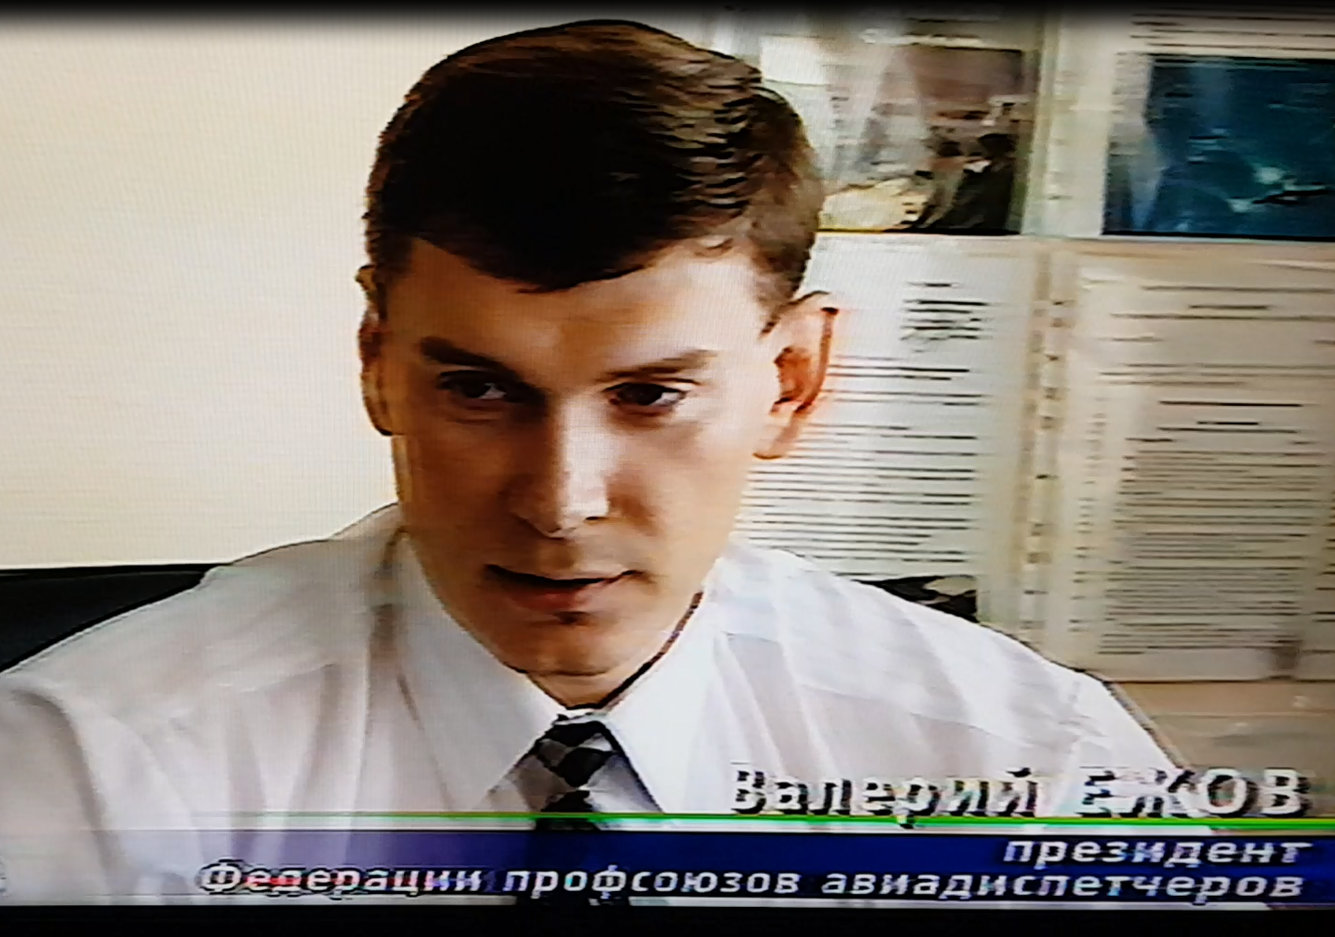 1998 г. Ежов В.И. президент Федерации профсоюзов авиационных диспетчеров России.